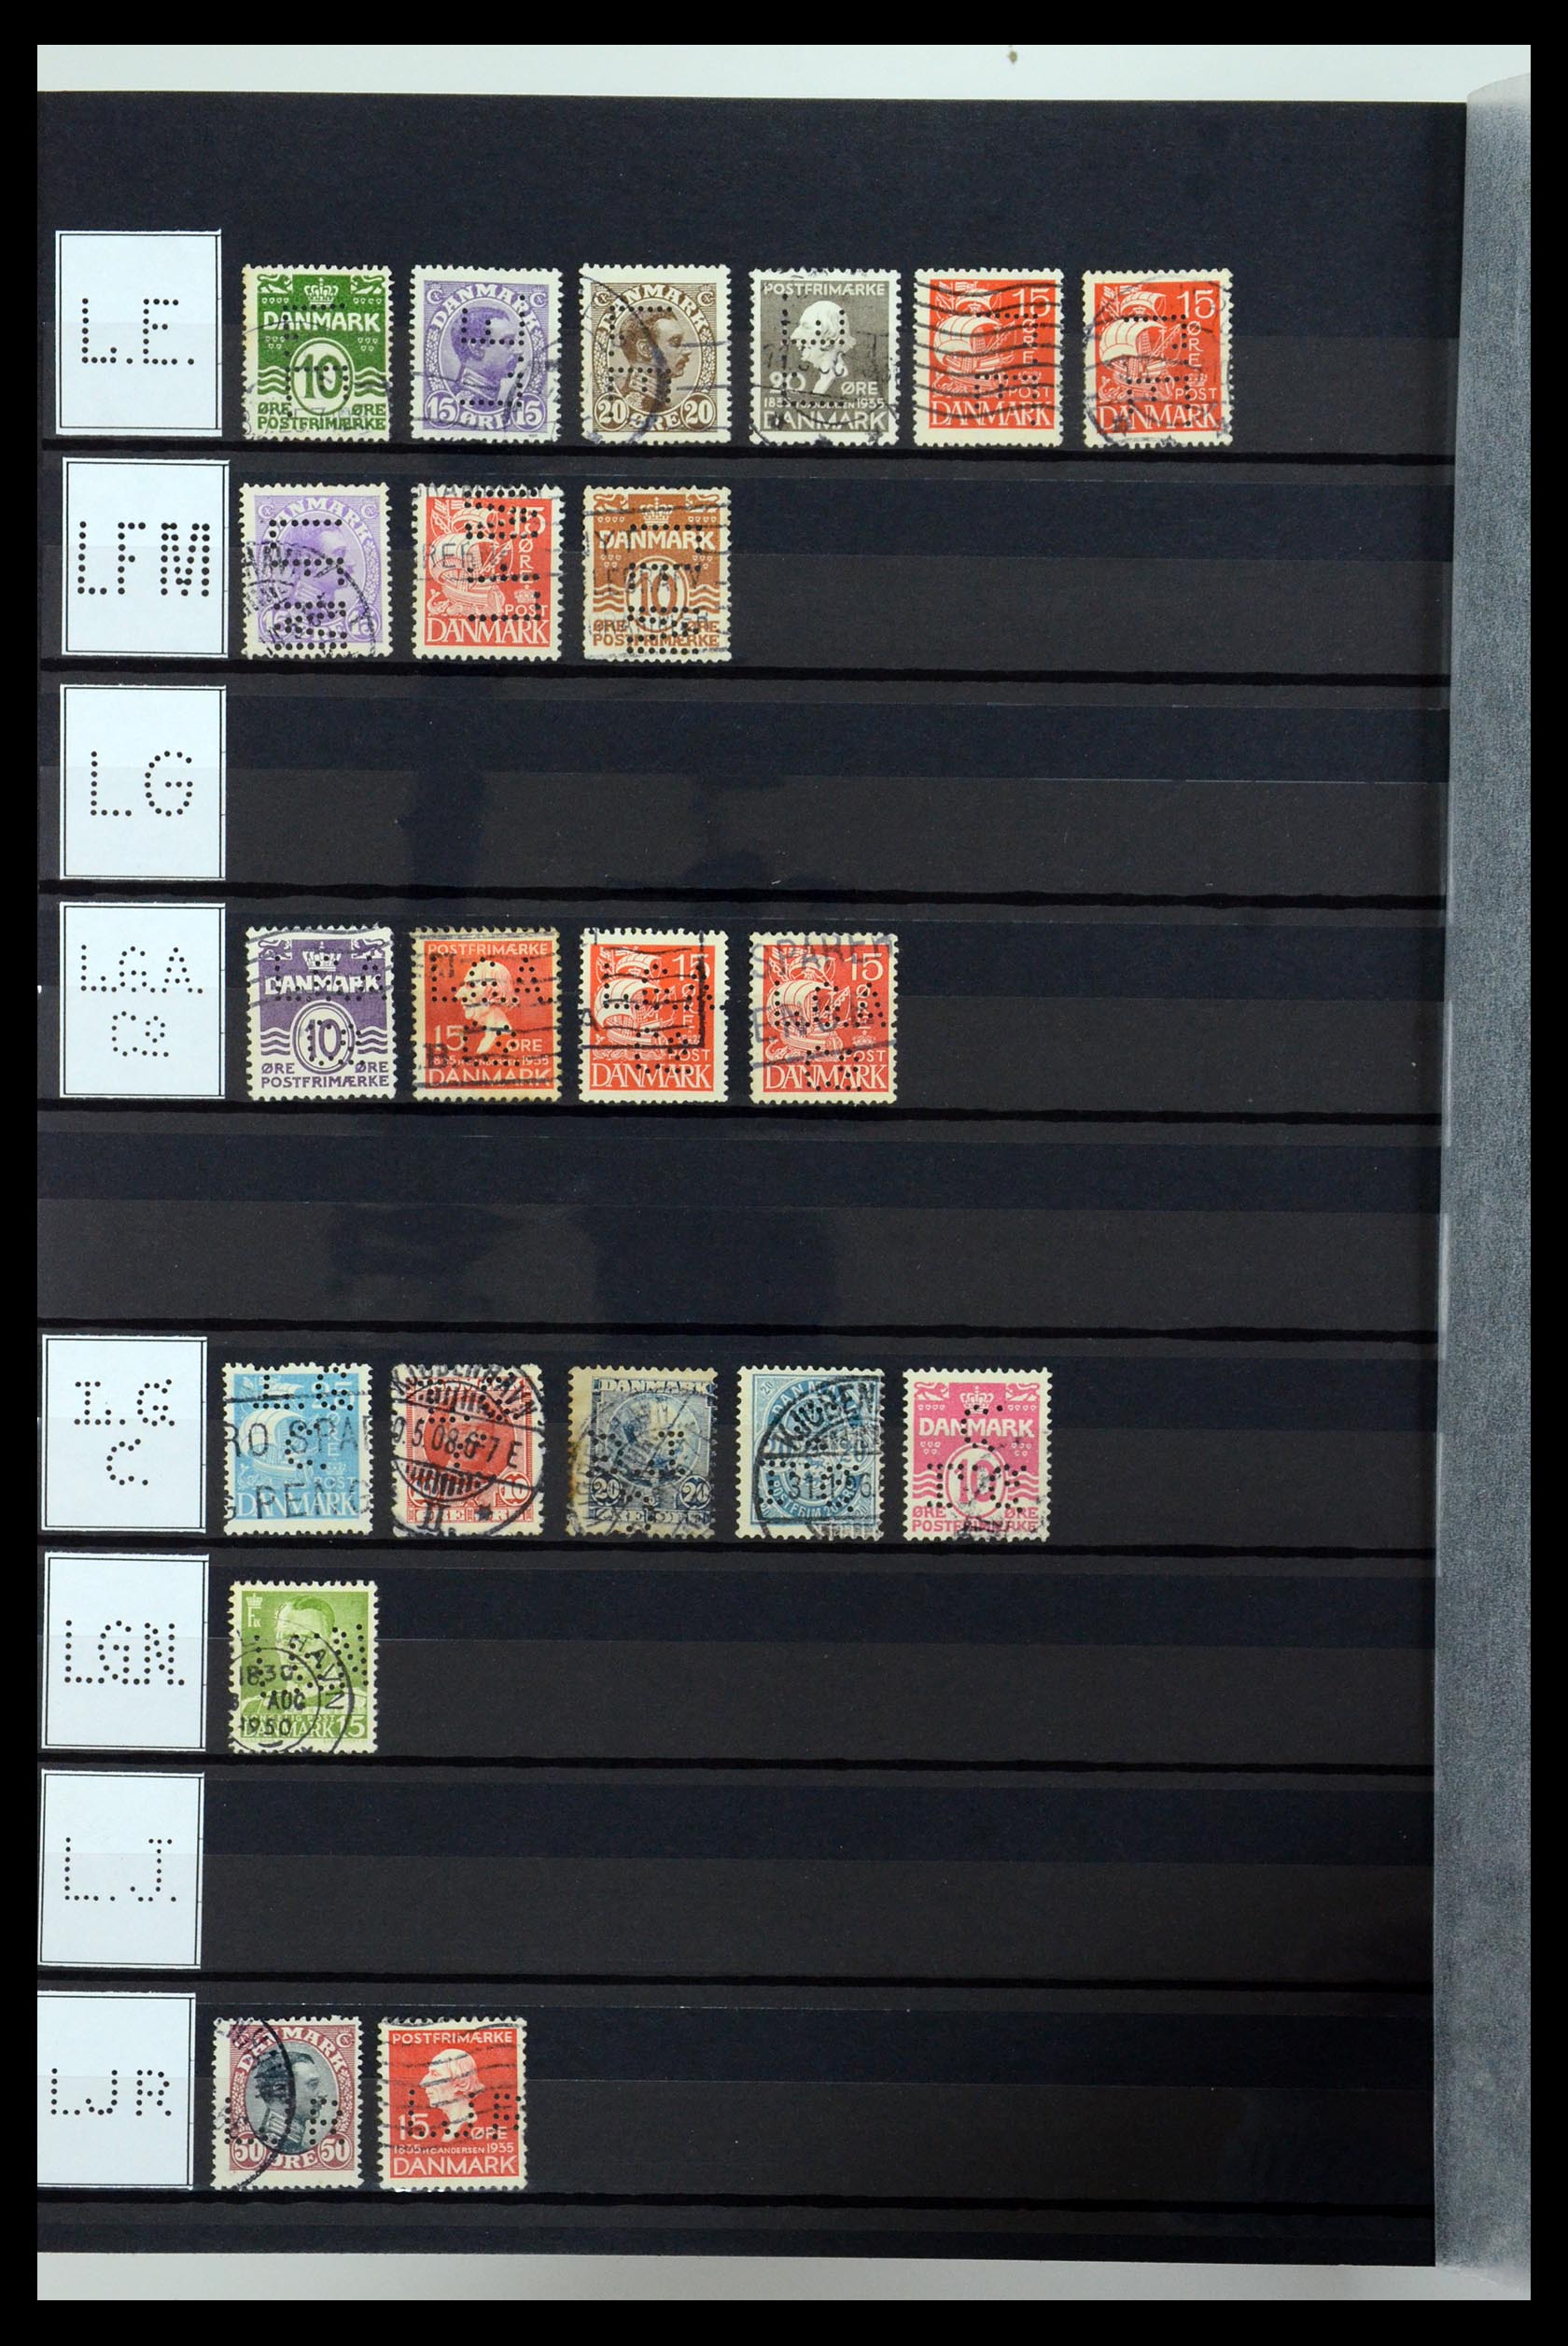 36396 164 - Postzegelverzameling 36396 Denemarken perfins.